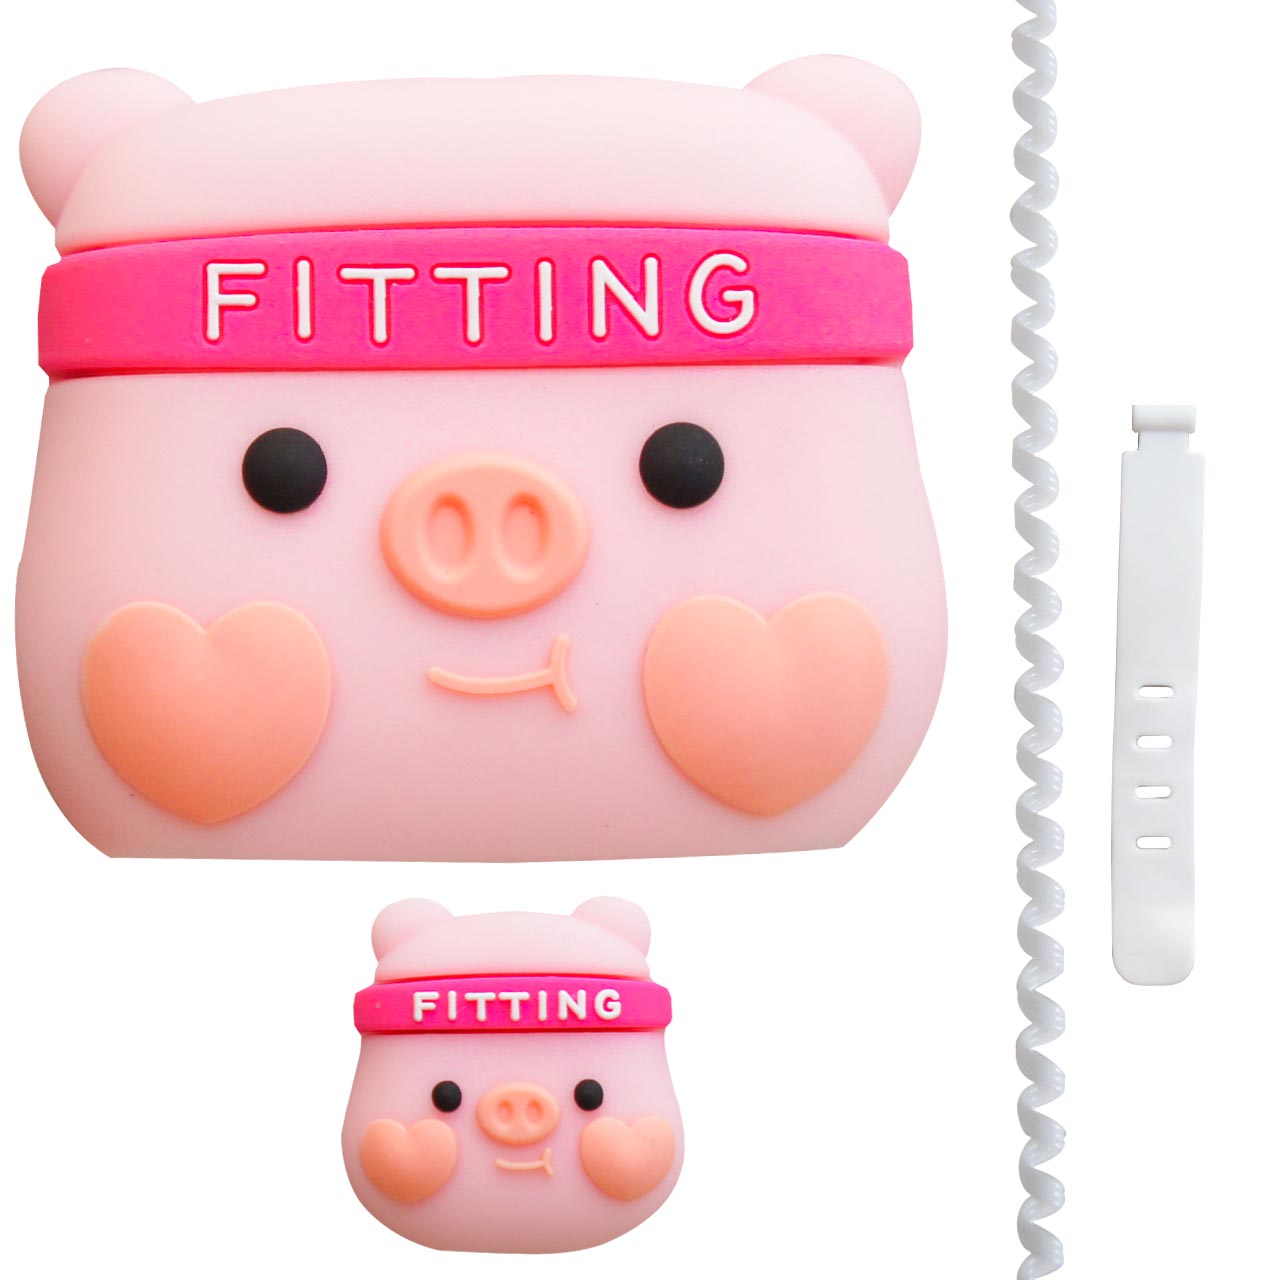 محافظ کابل طرح فانتزی خوک مدل Fitting Pig-Cover به همراه محافظ شارژر دیواری مجموعه 4 عددی